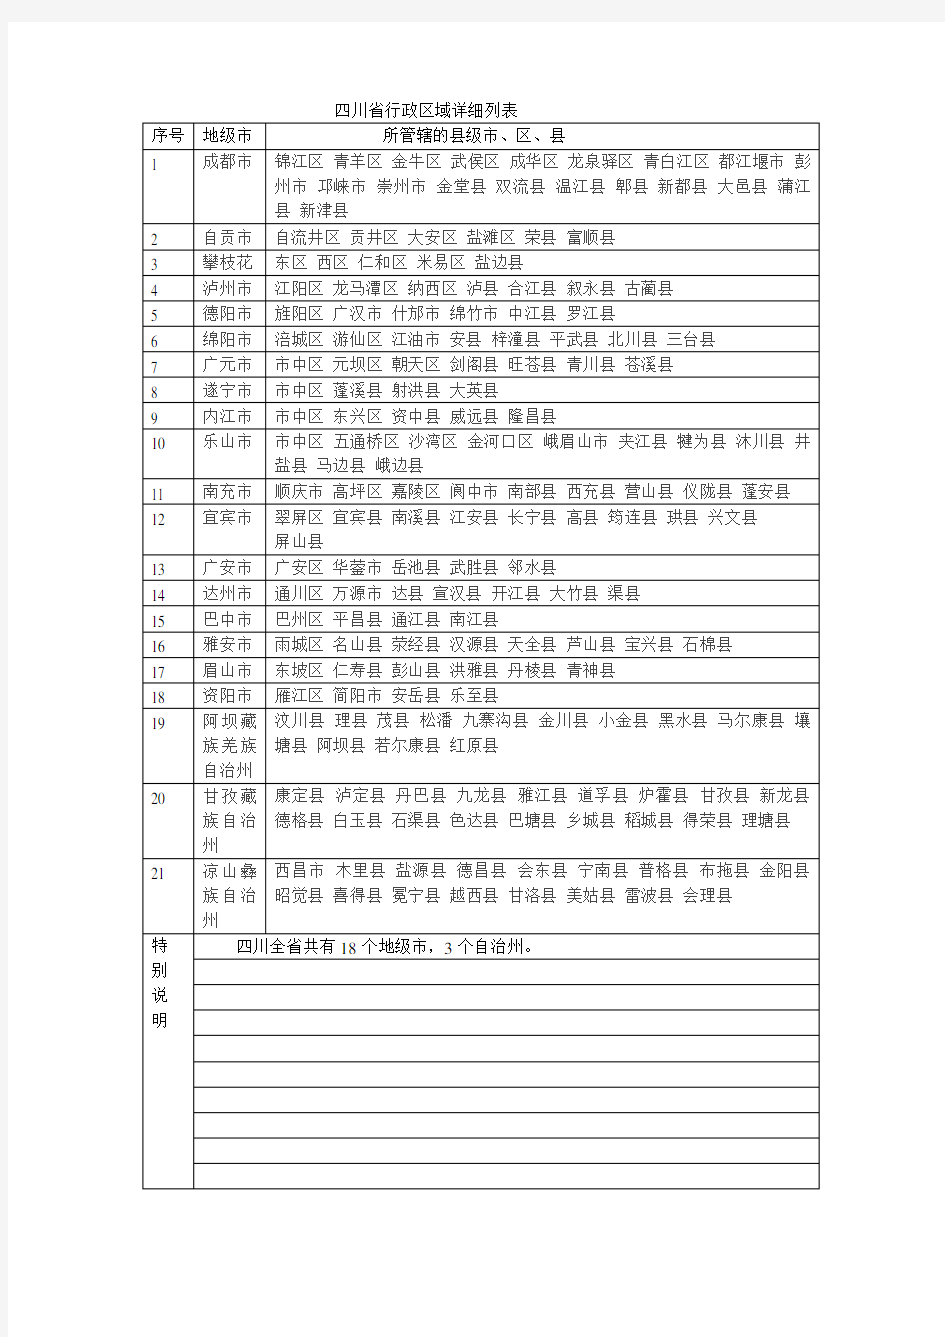 四川省行政区域详细列表